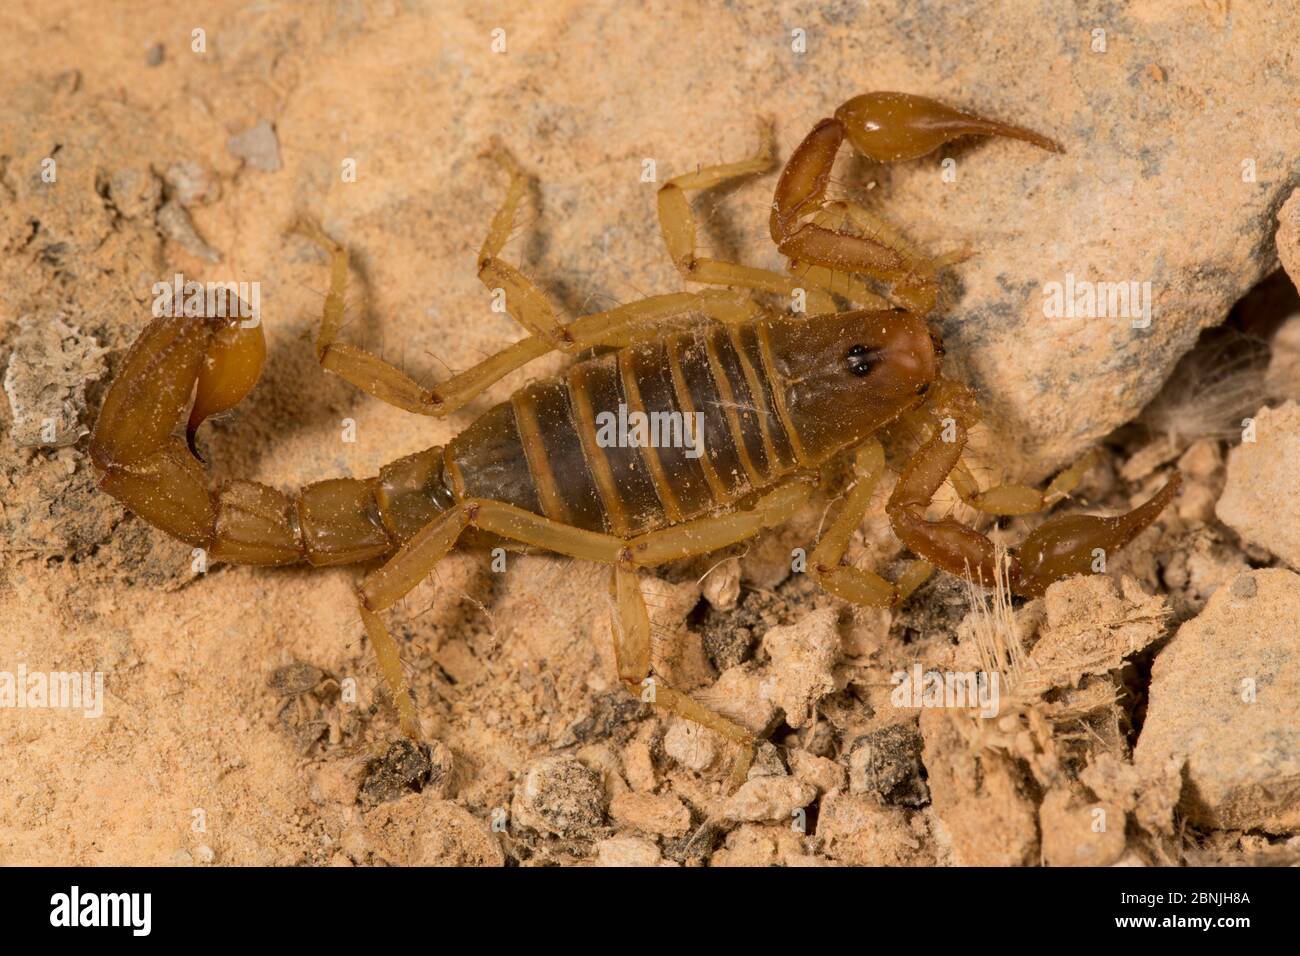 Scorpion, unbekannte Art unter den Federn, ein Spezialist Futterhäuschen auf weichen Zecken, Guano-Insel Pescadores, Peru Stockfoto